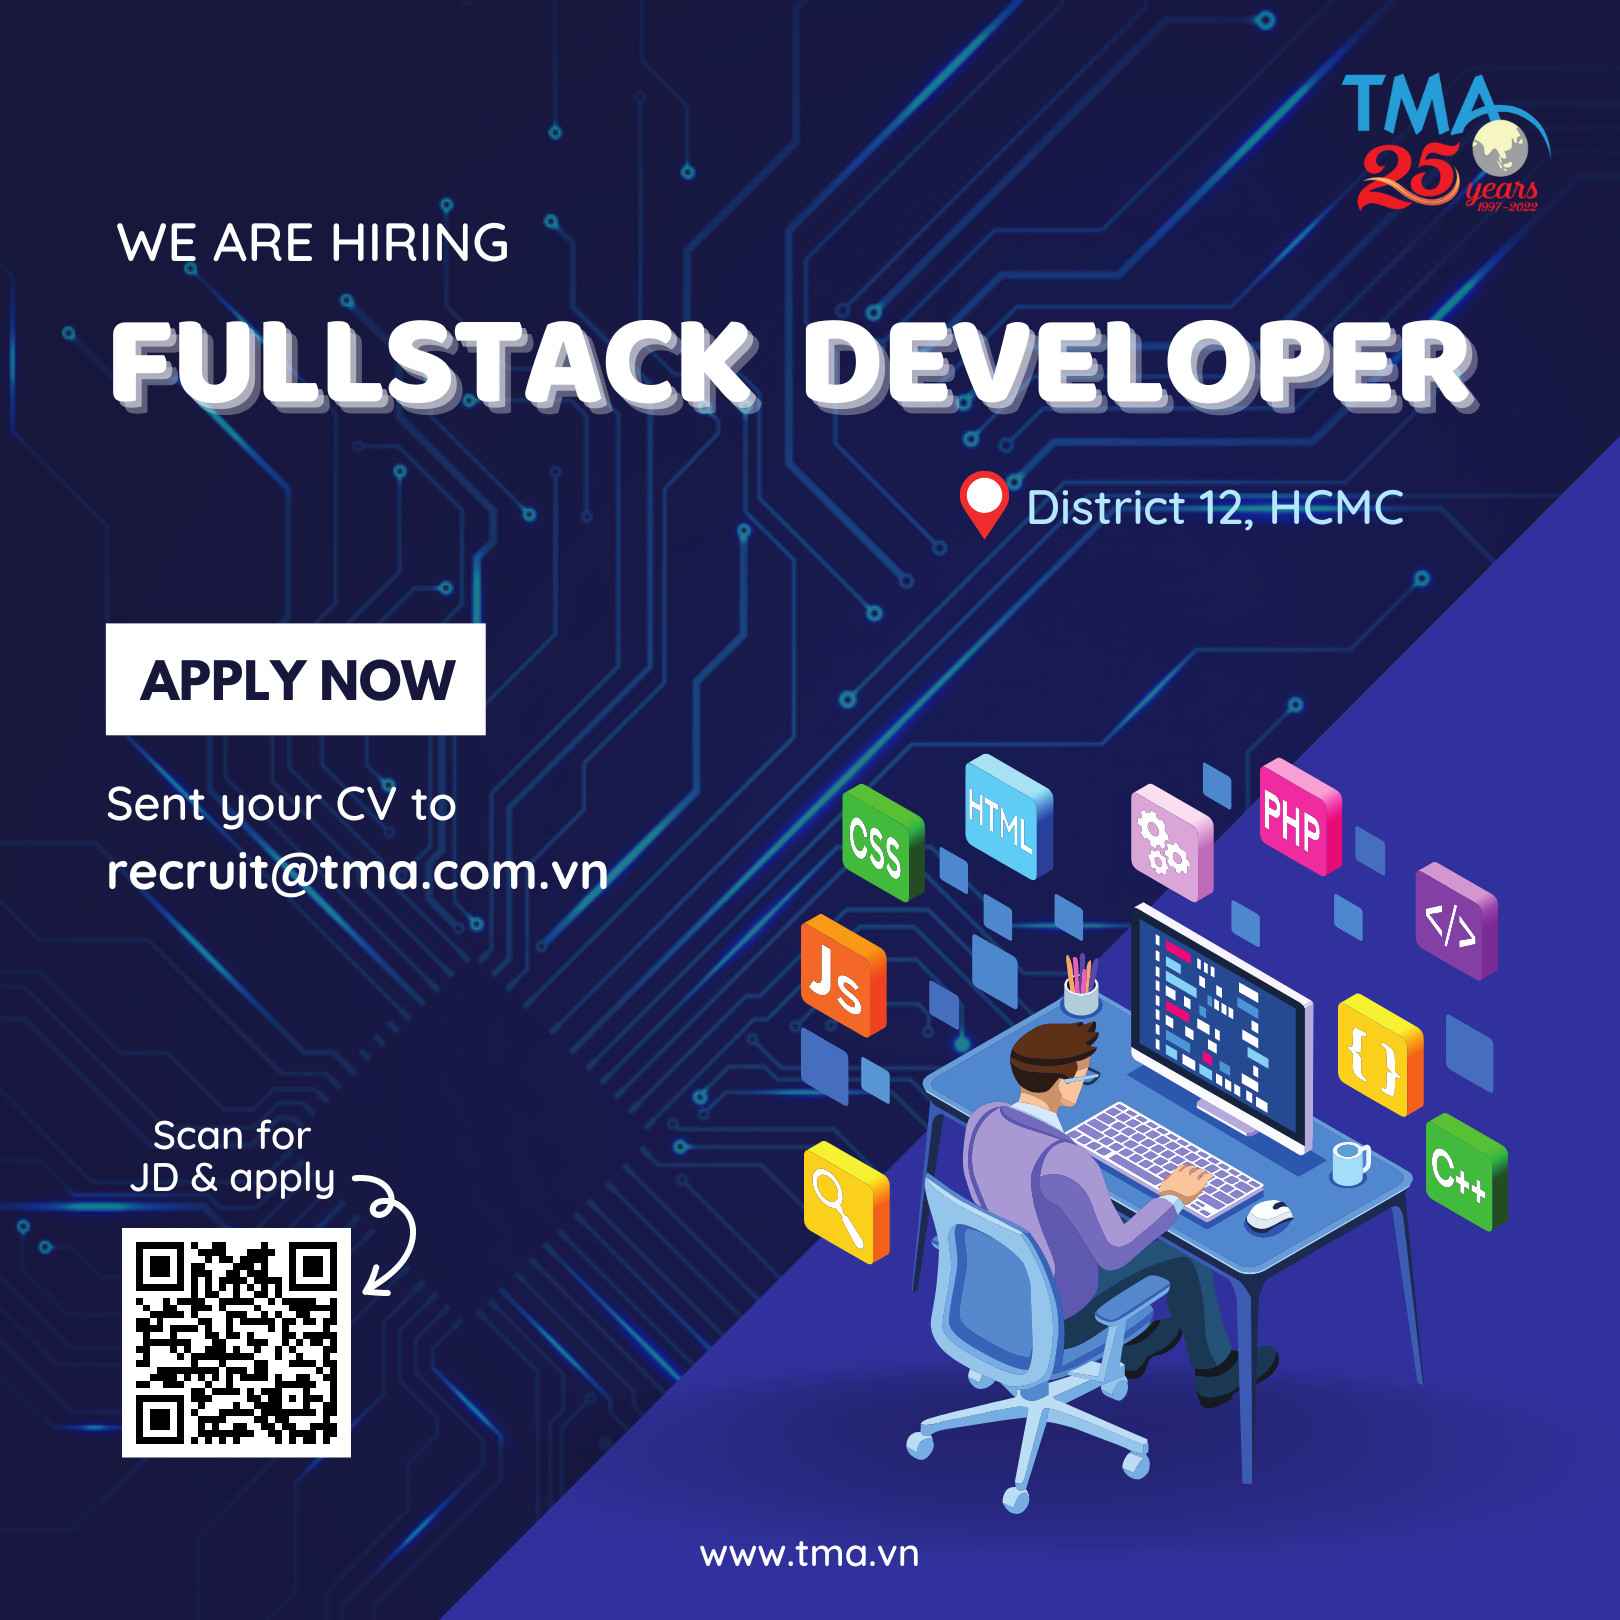 TMA tuyển dụng vị trí Fullstack Developer